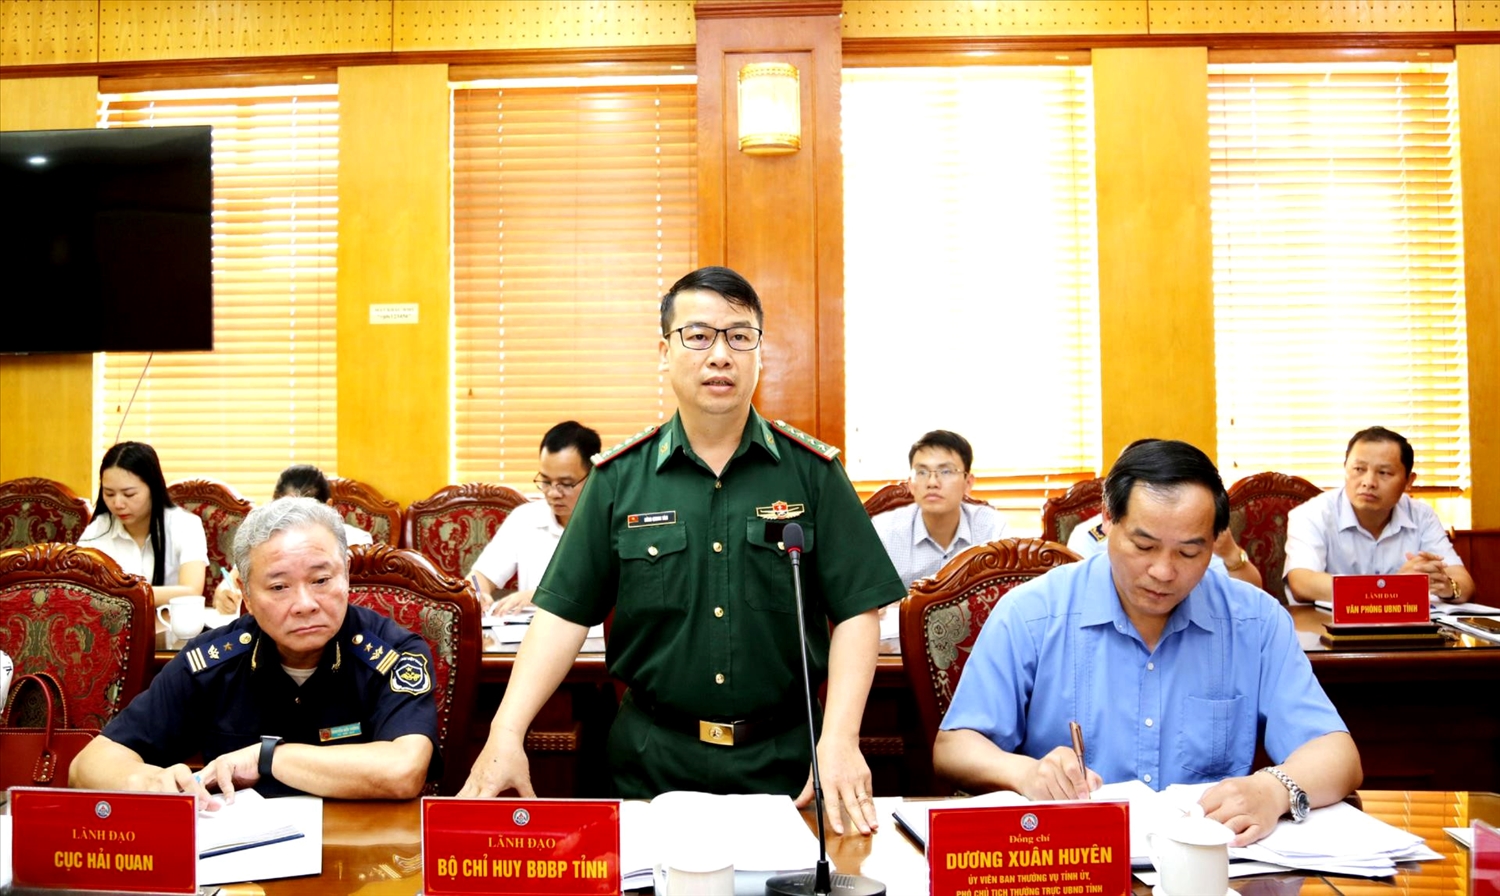 Đại tá Nông Quang Tám - Phó Chỉ huy trưởng Bộ Chỉ huy BĐBP tỉnh Lạng Sơn phát biểu tại cuộc họp